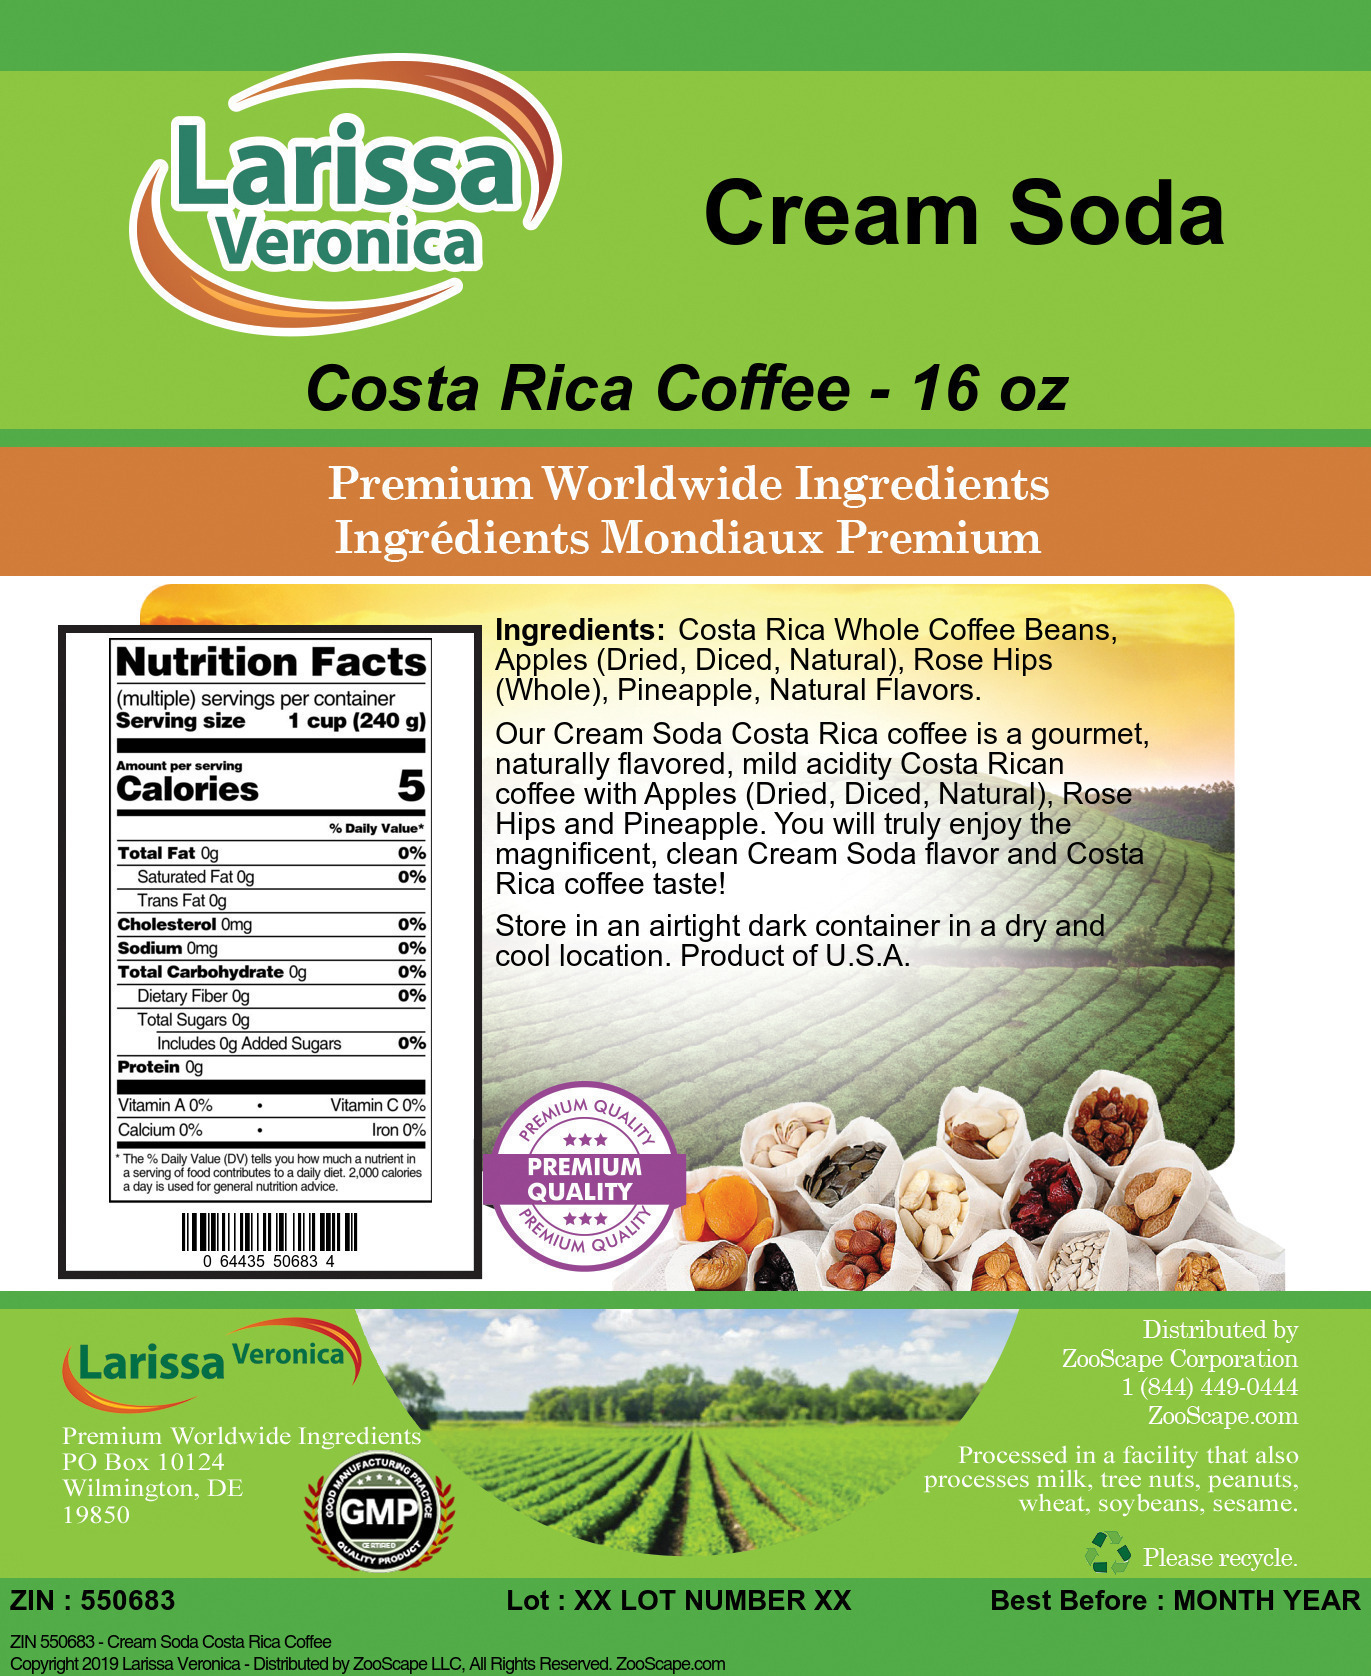 Cream Soda Costa Rica Coffee - Label